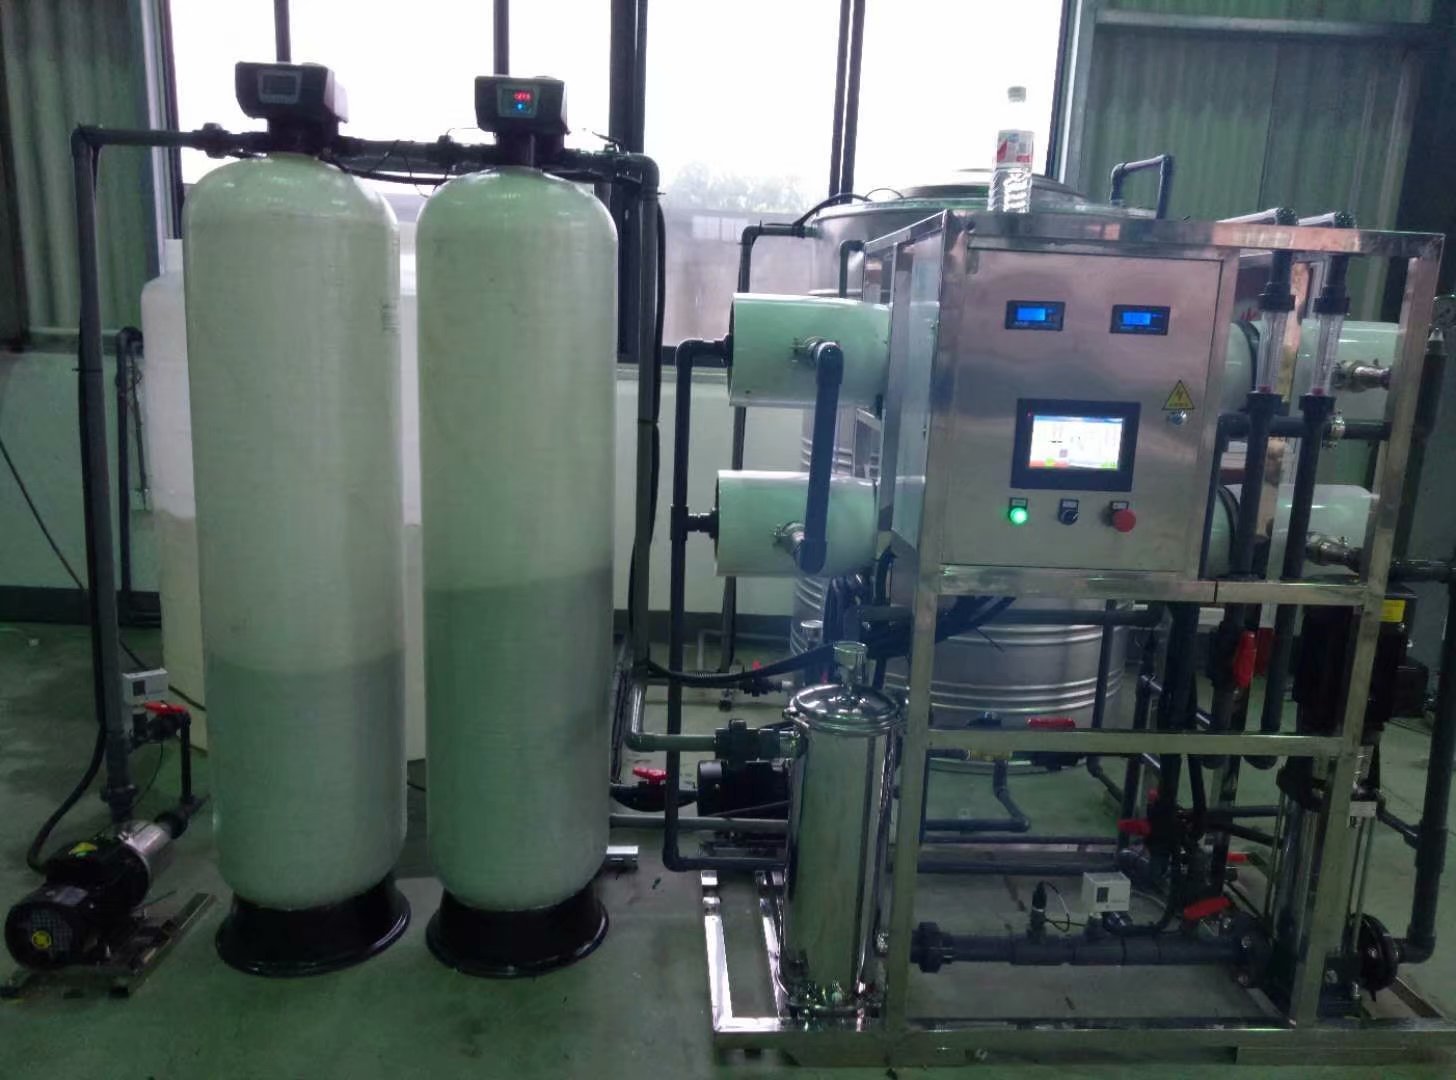 江苏制药纯化水设备，500LGMP药典纯化水设备